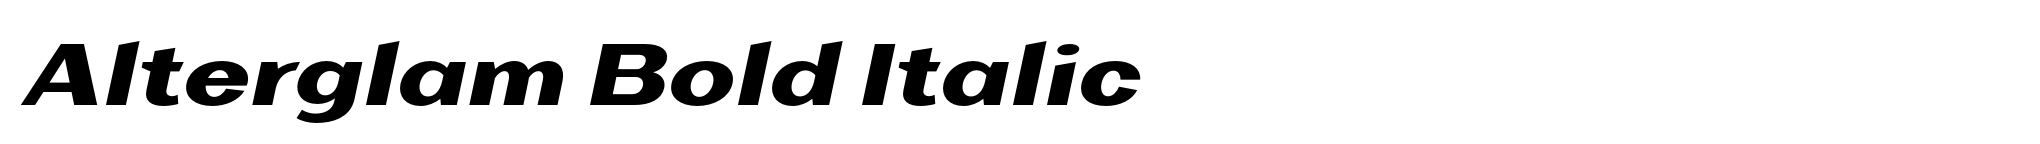 Alterglam Bold Italic image